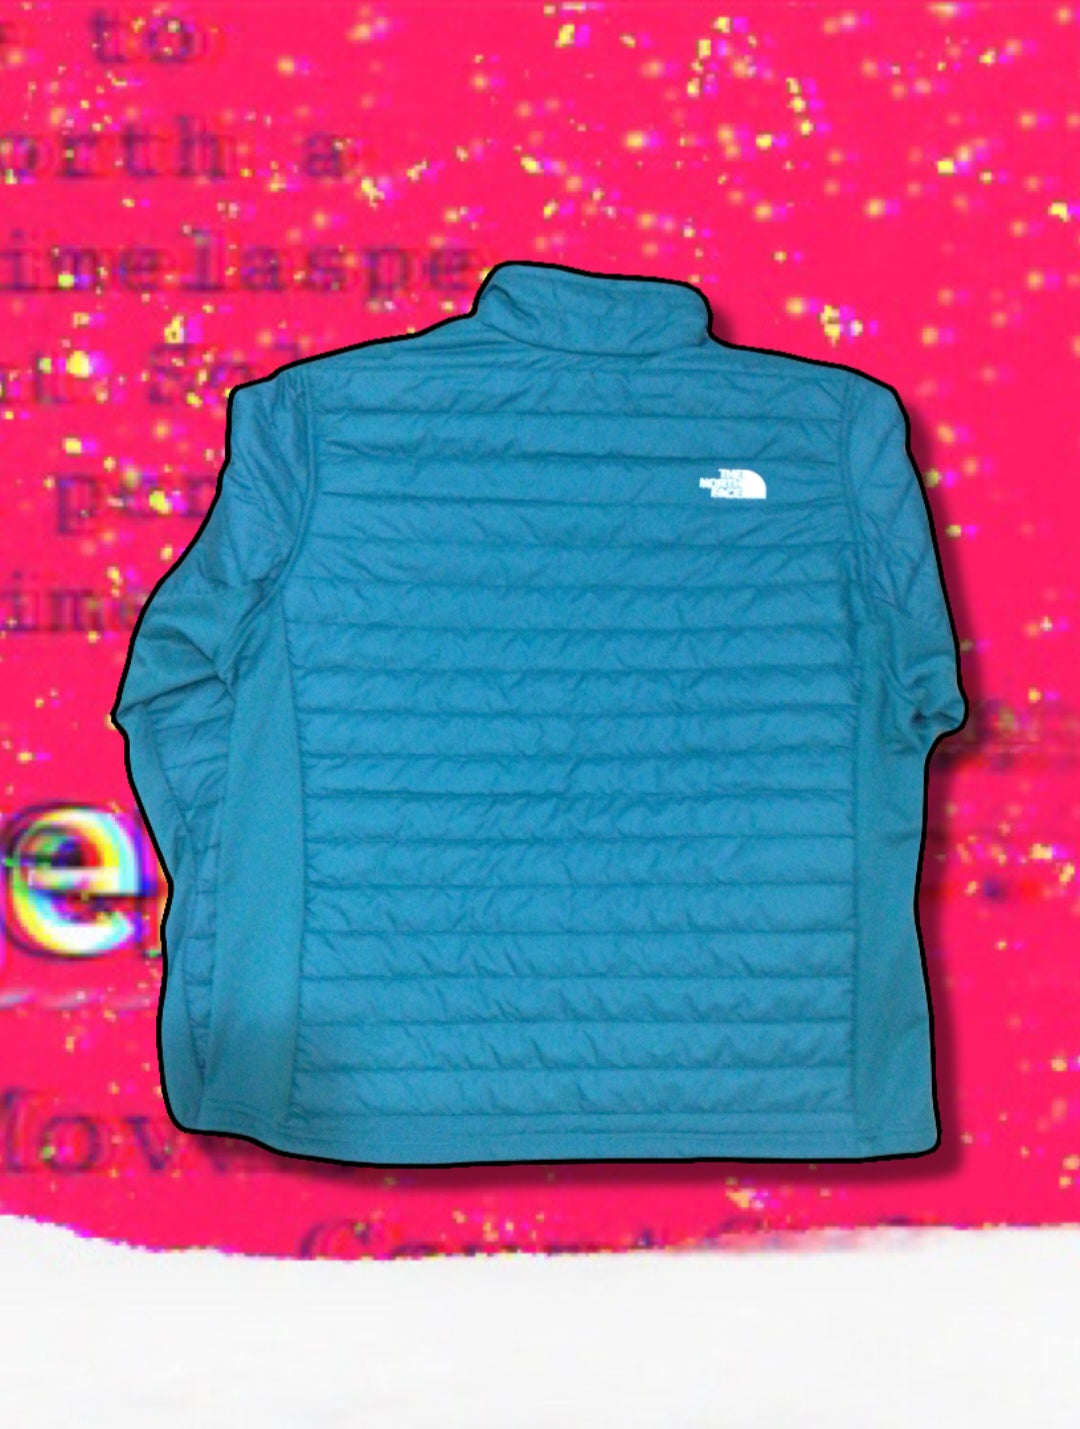 TNF (North Face) Jacket Men's XL